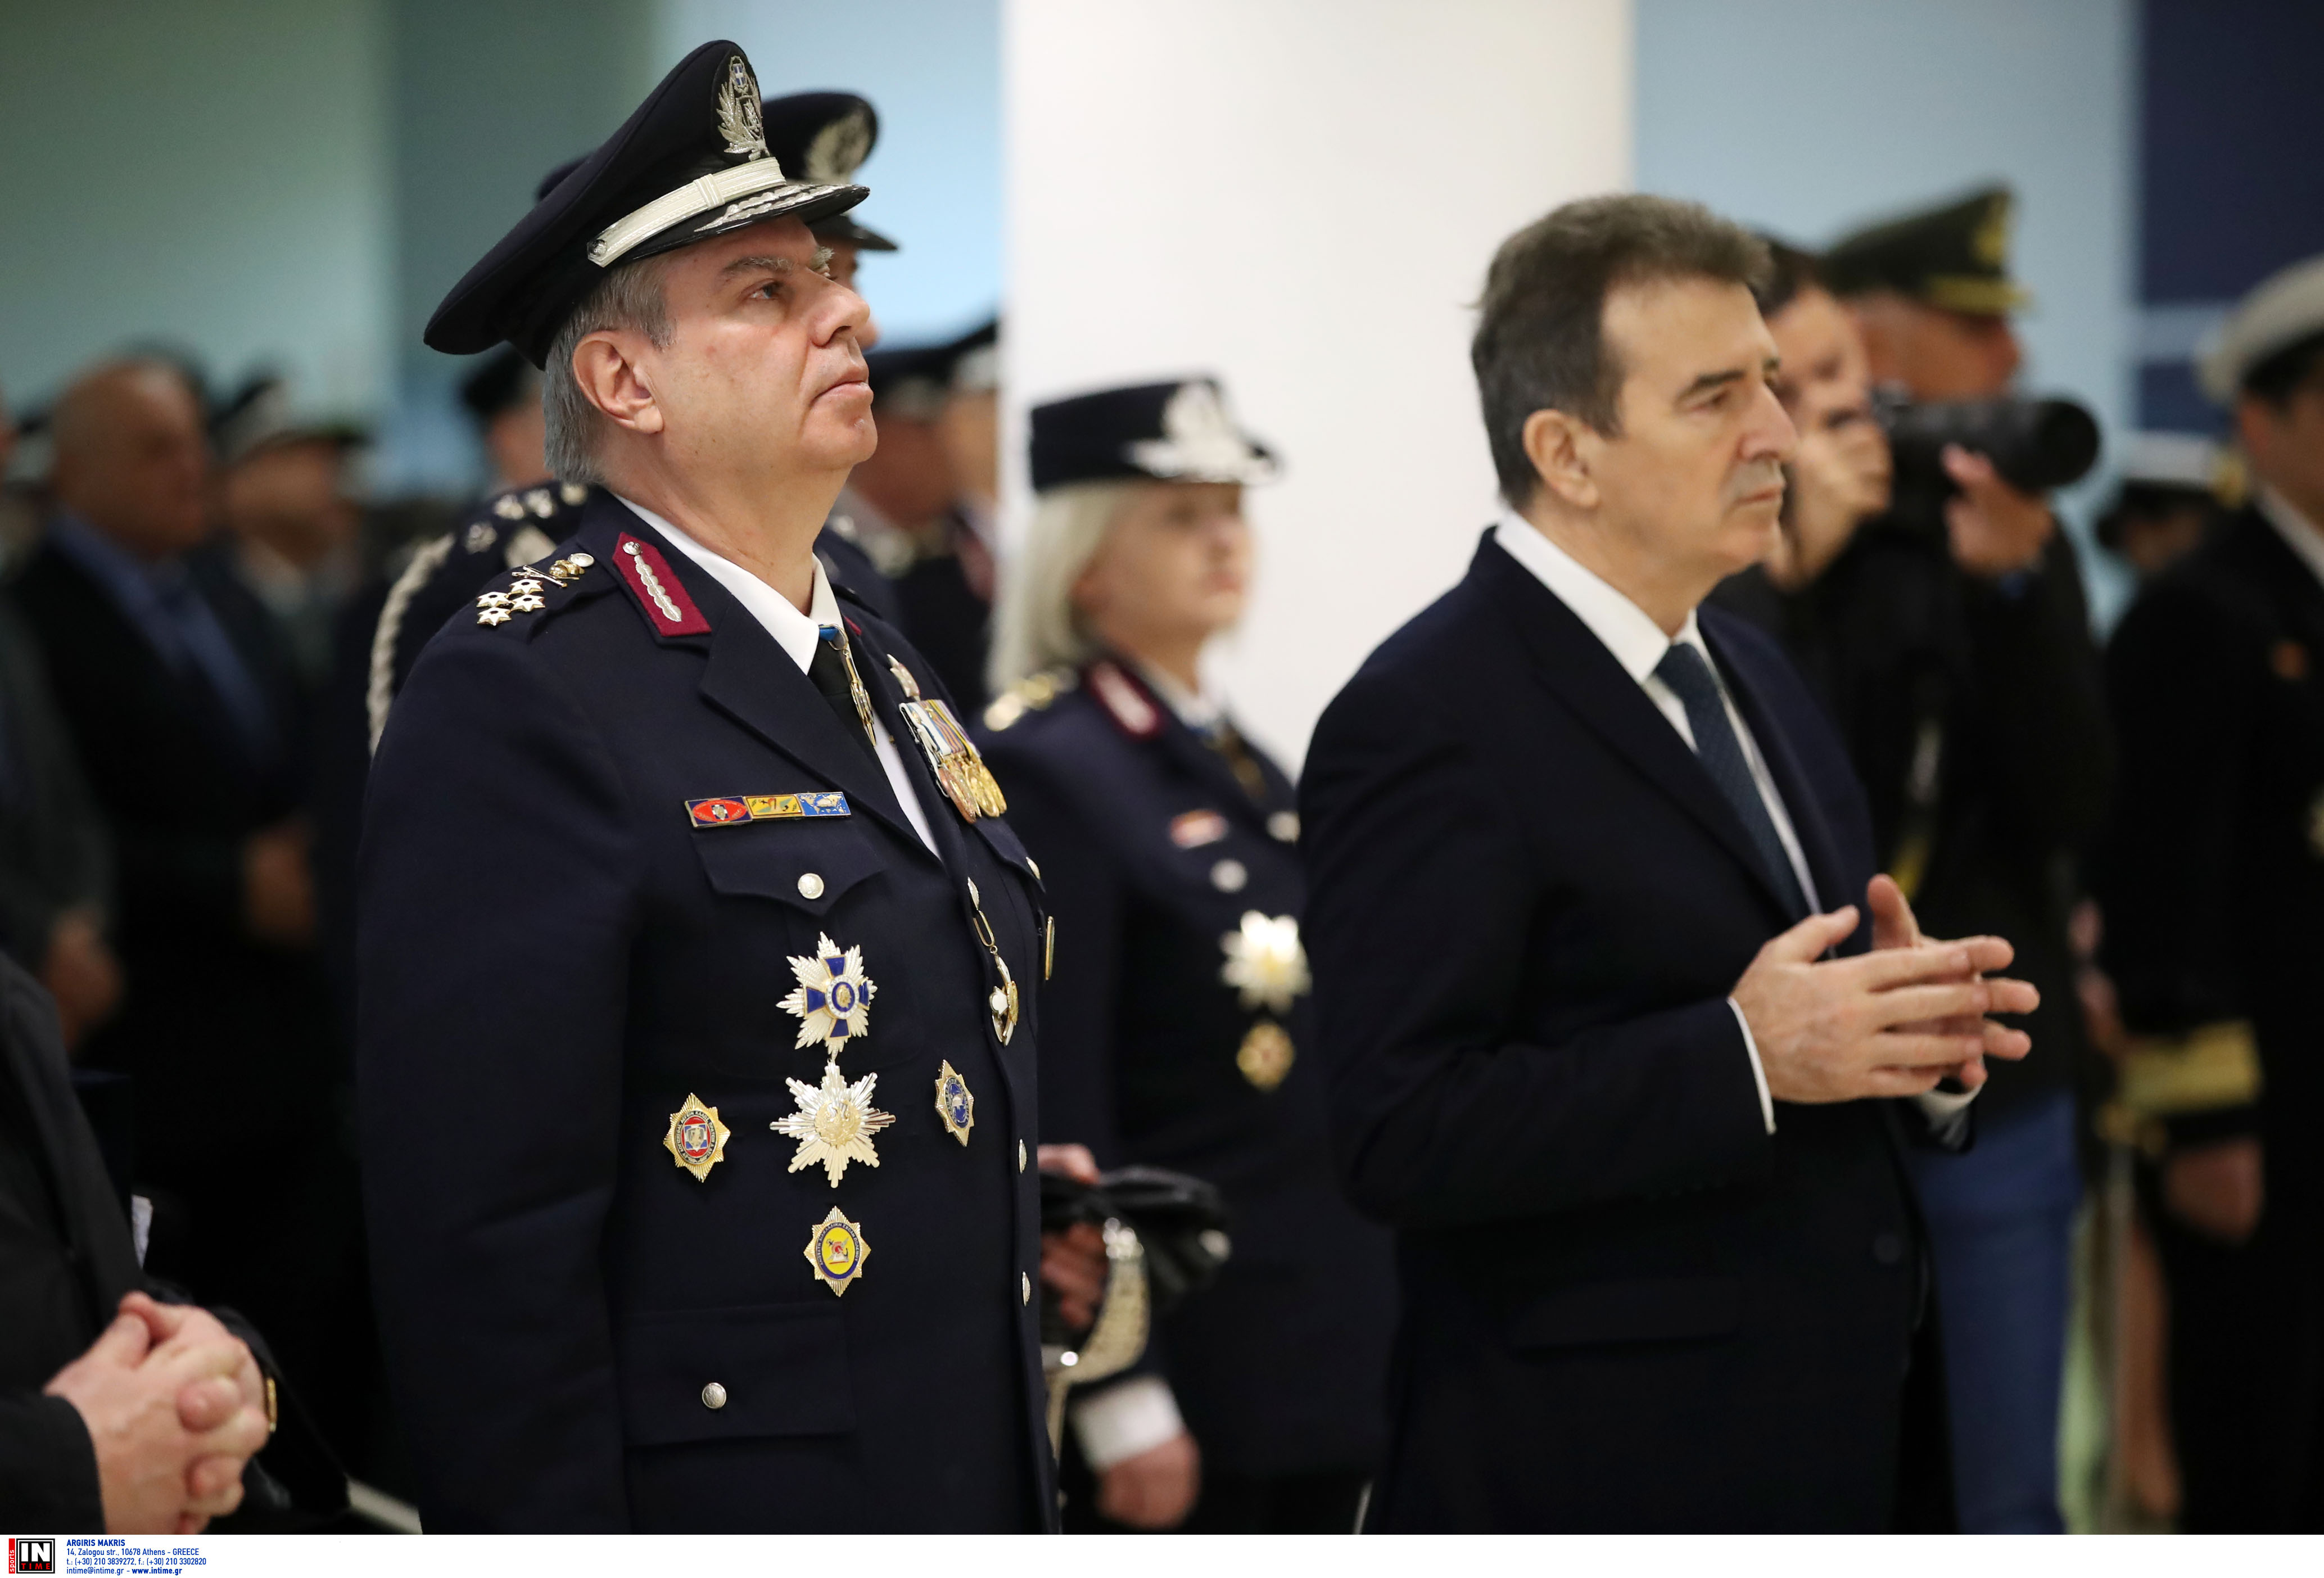 τελετή Παράδοσης - Ανάληψης καθηκόντων Αρχηγού Ελληνικής Αστυνομίας